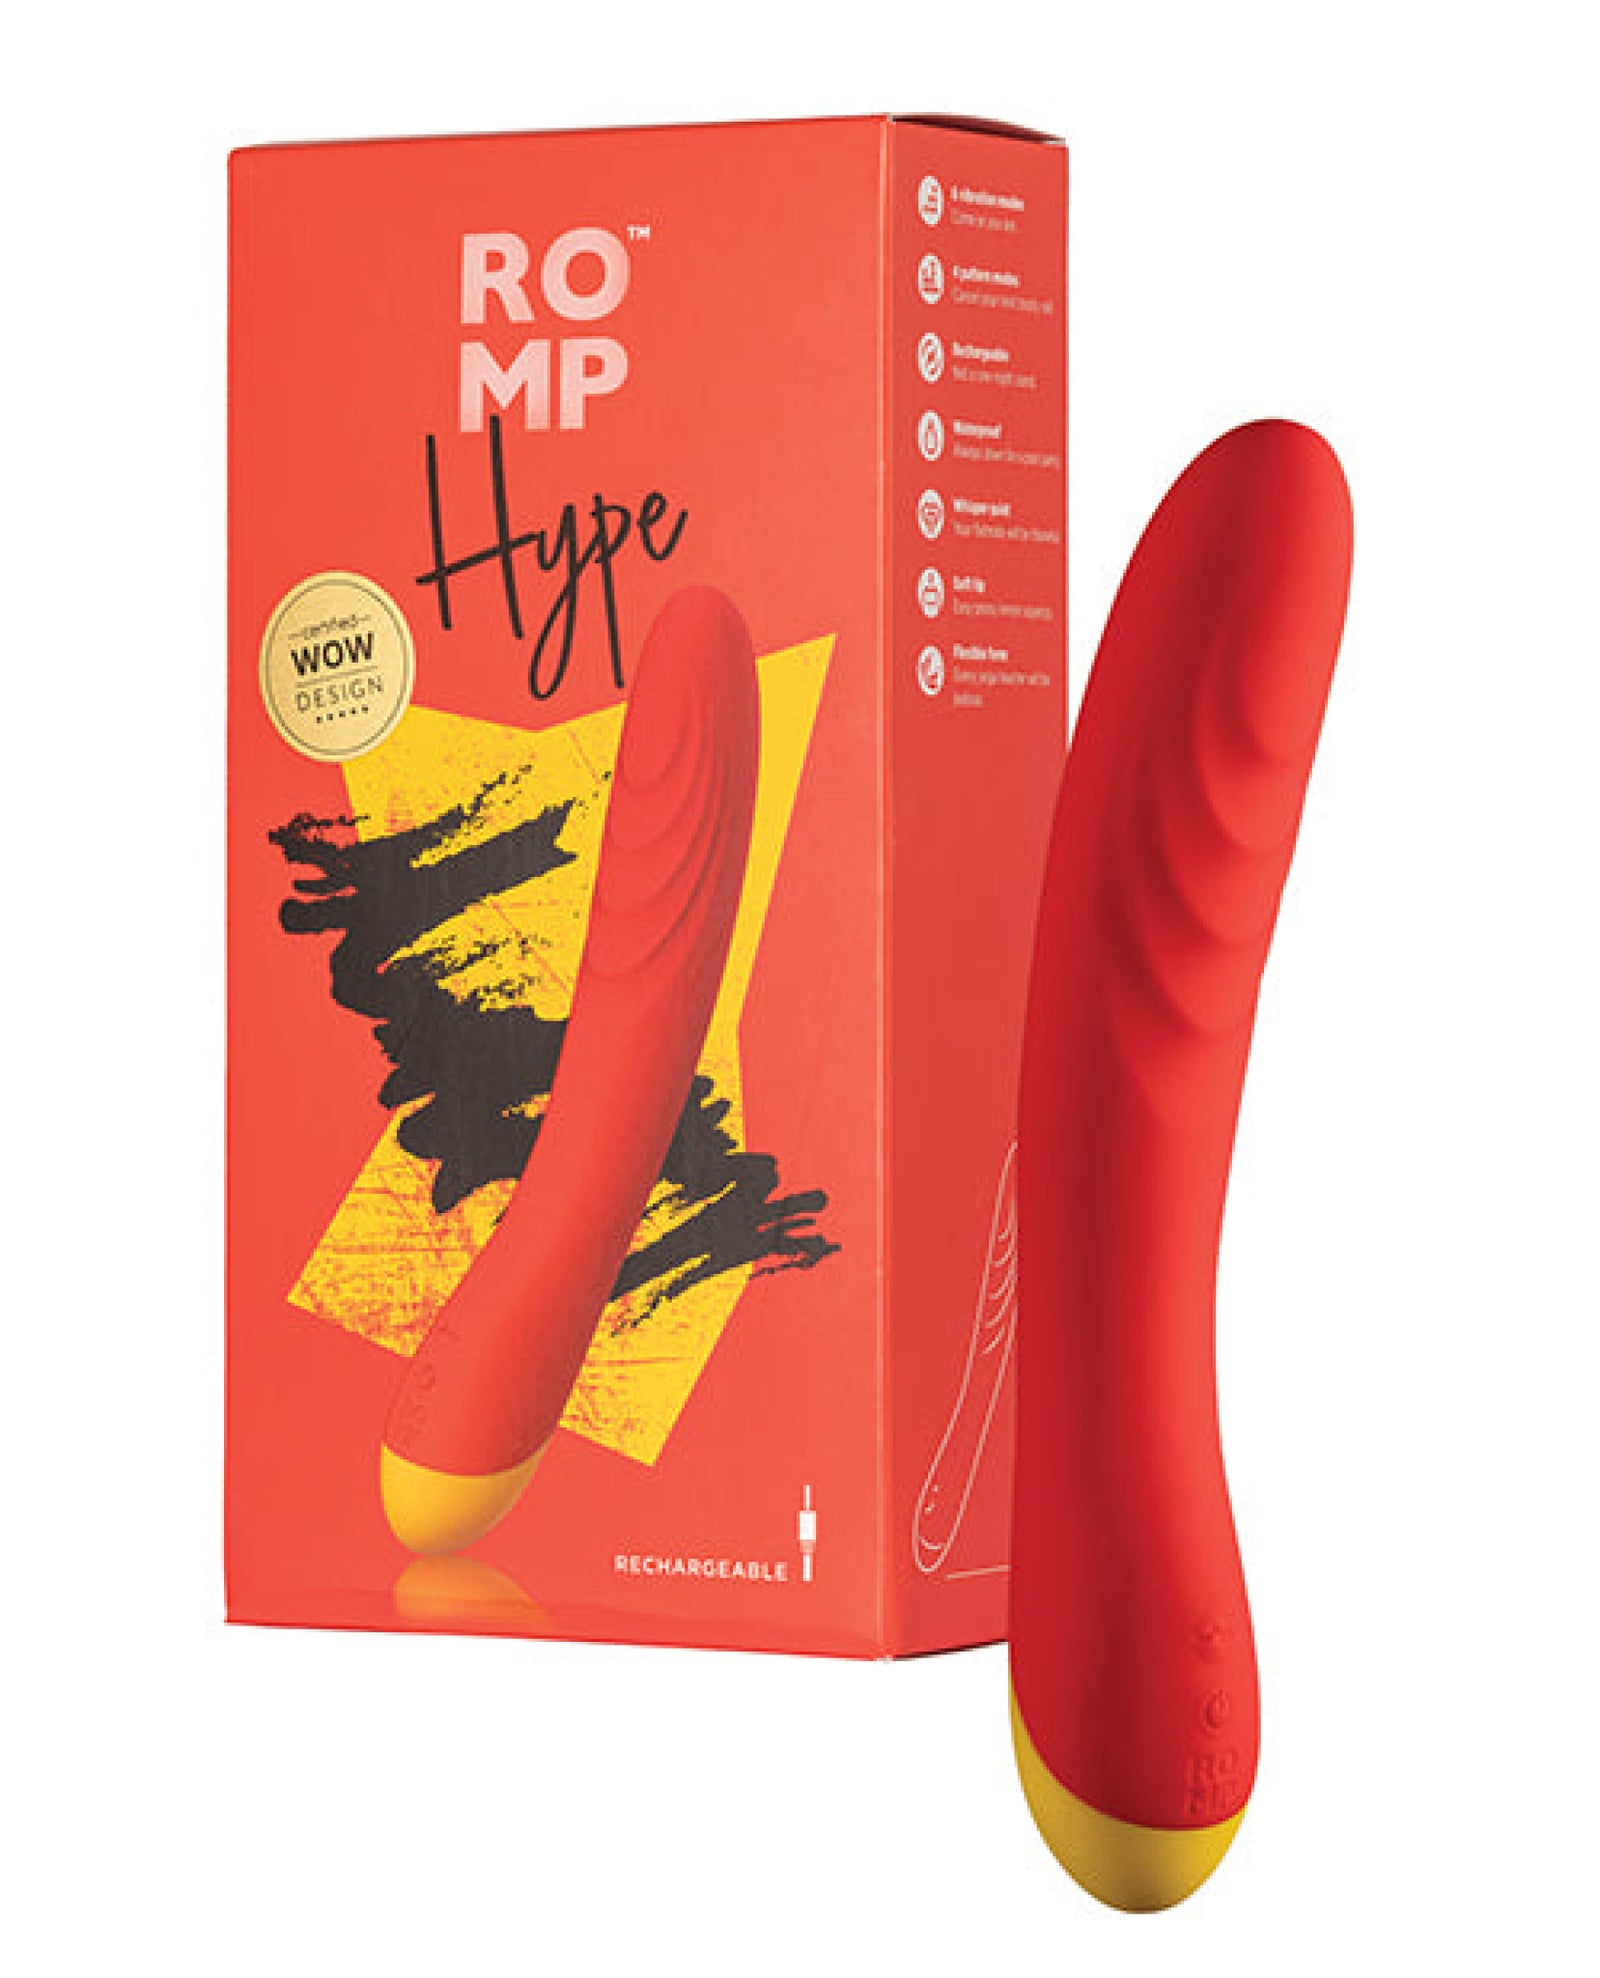 Romp Hype G Spot Vibrator - Red Romp